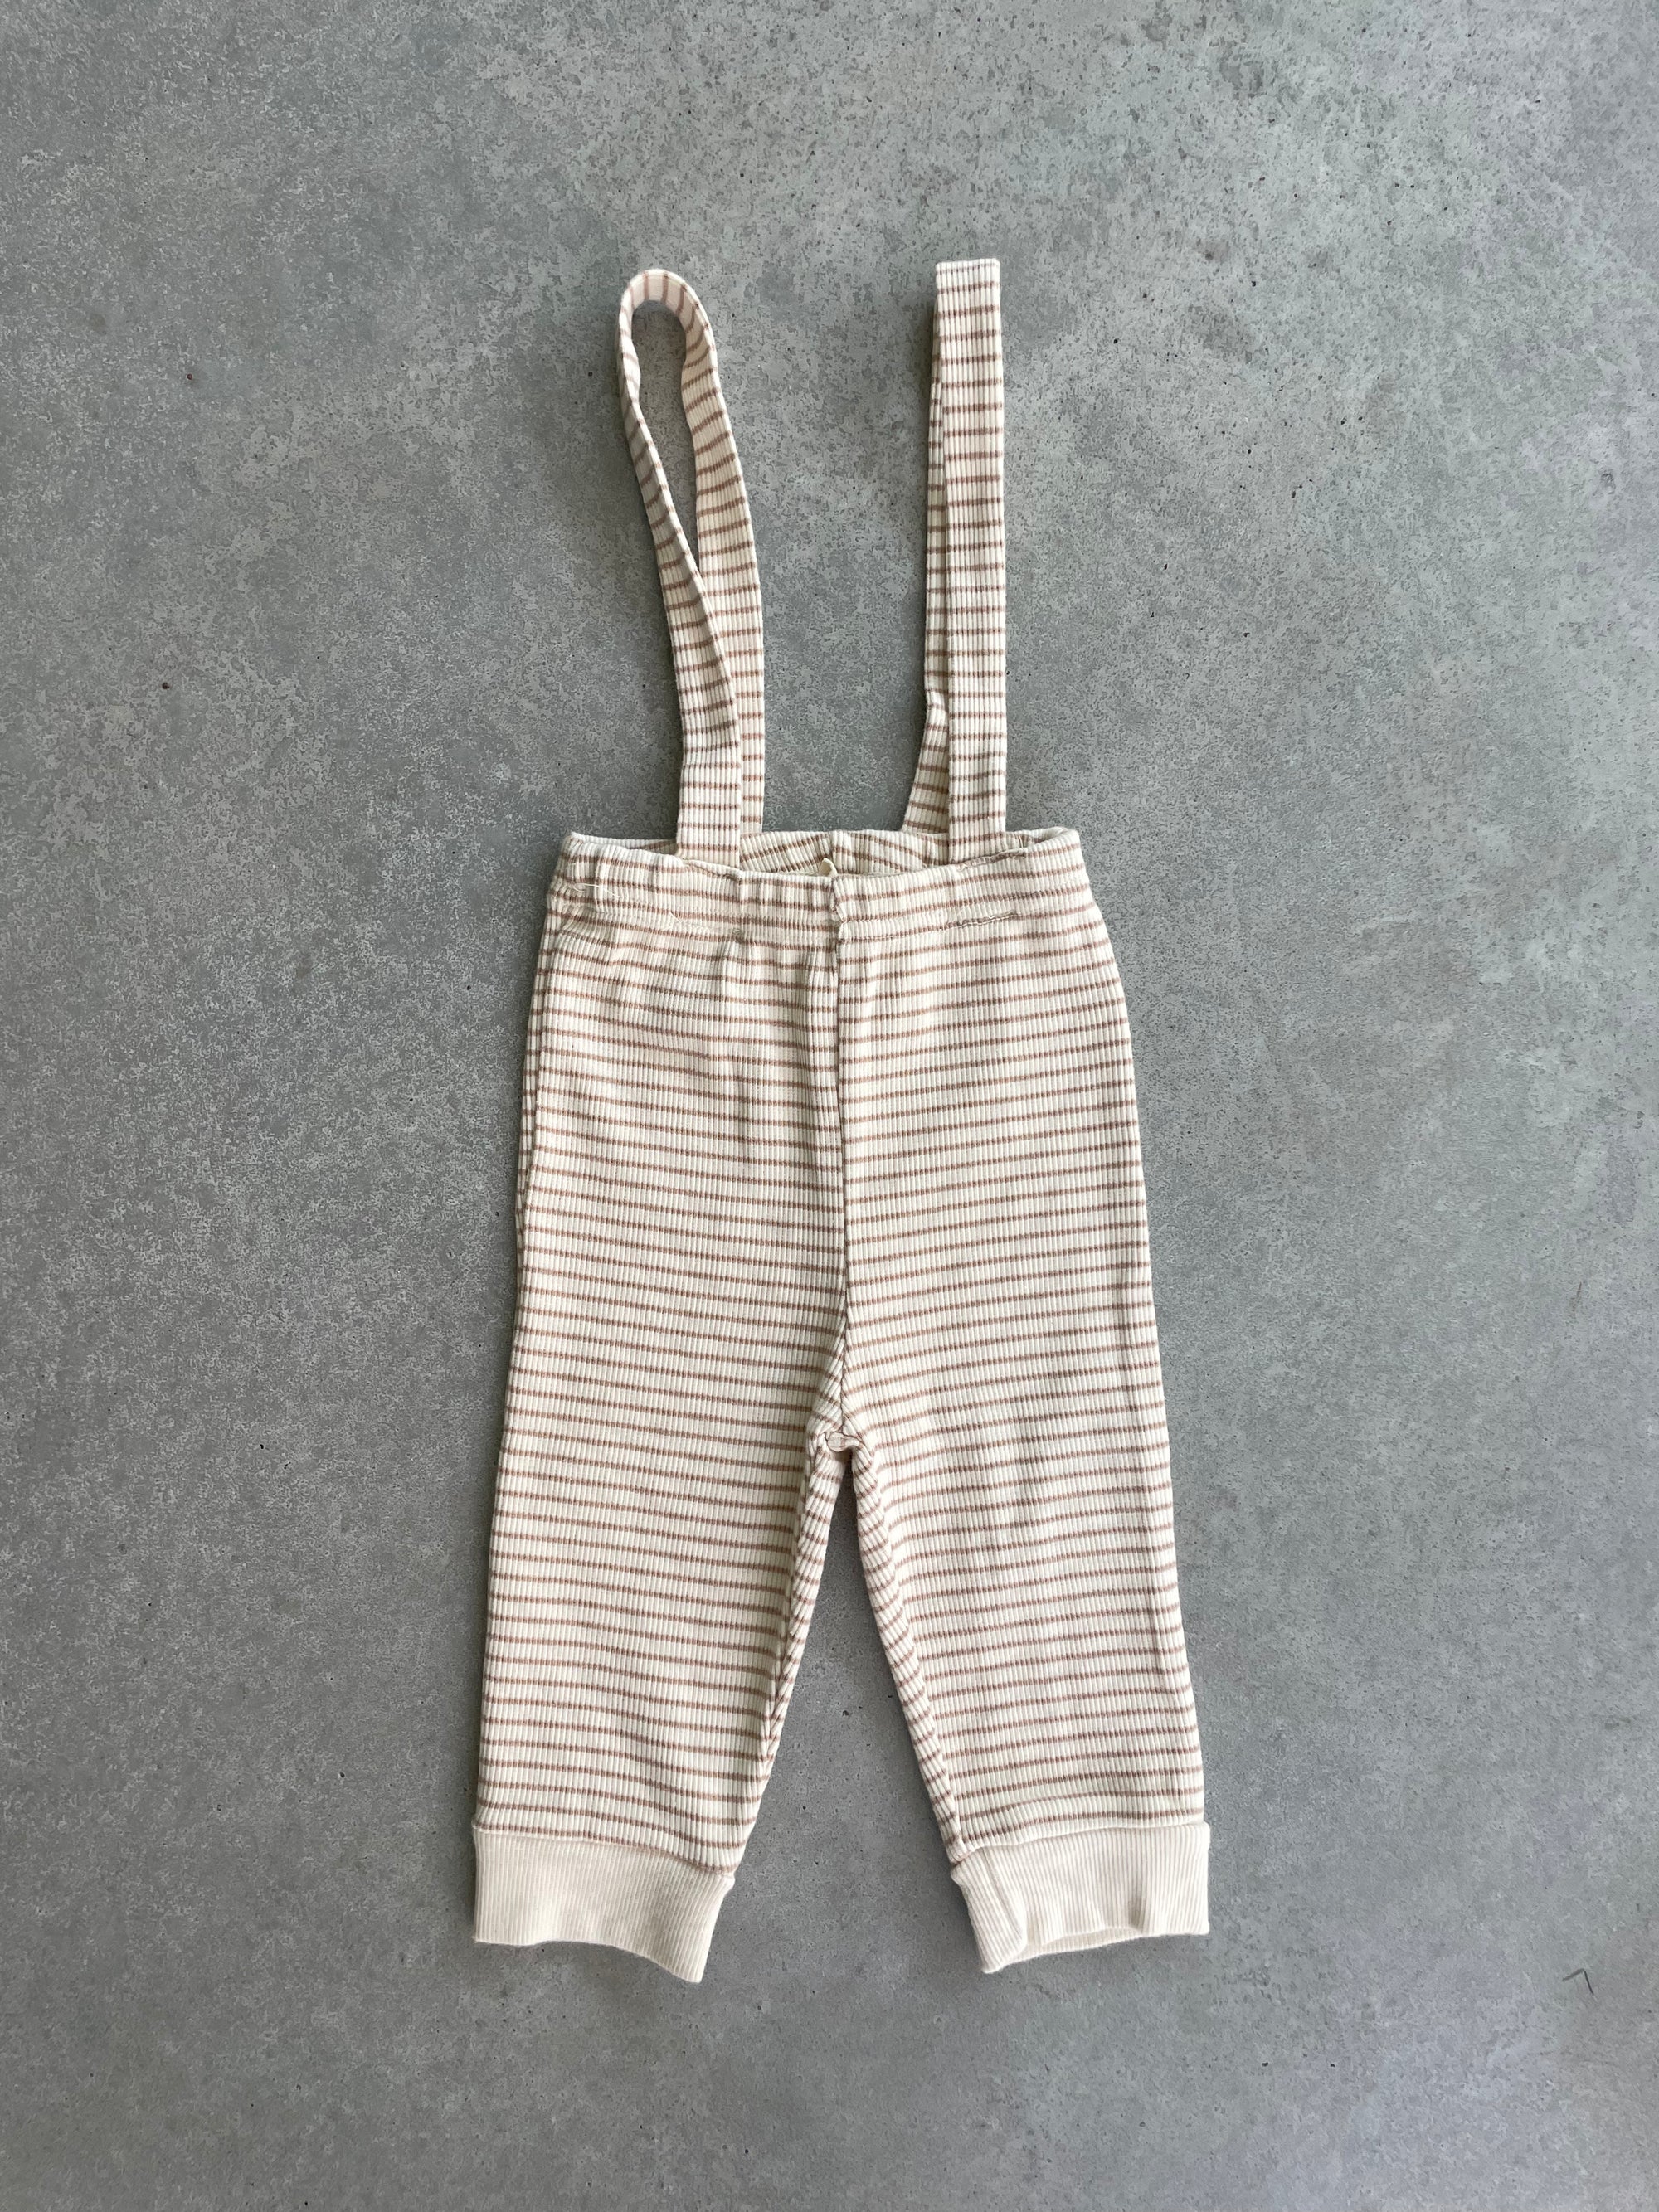 Striped overalls